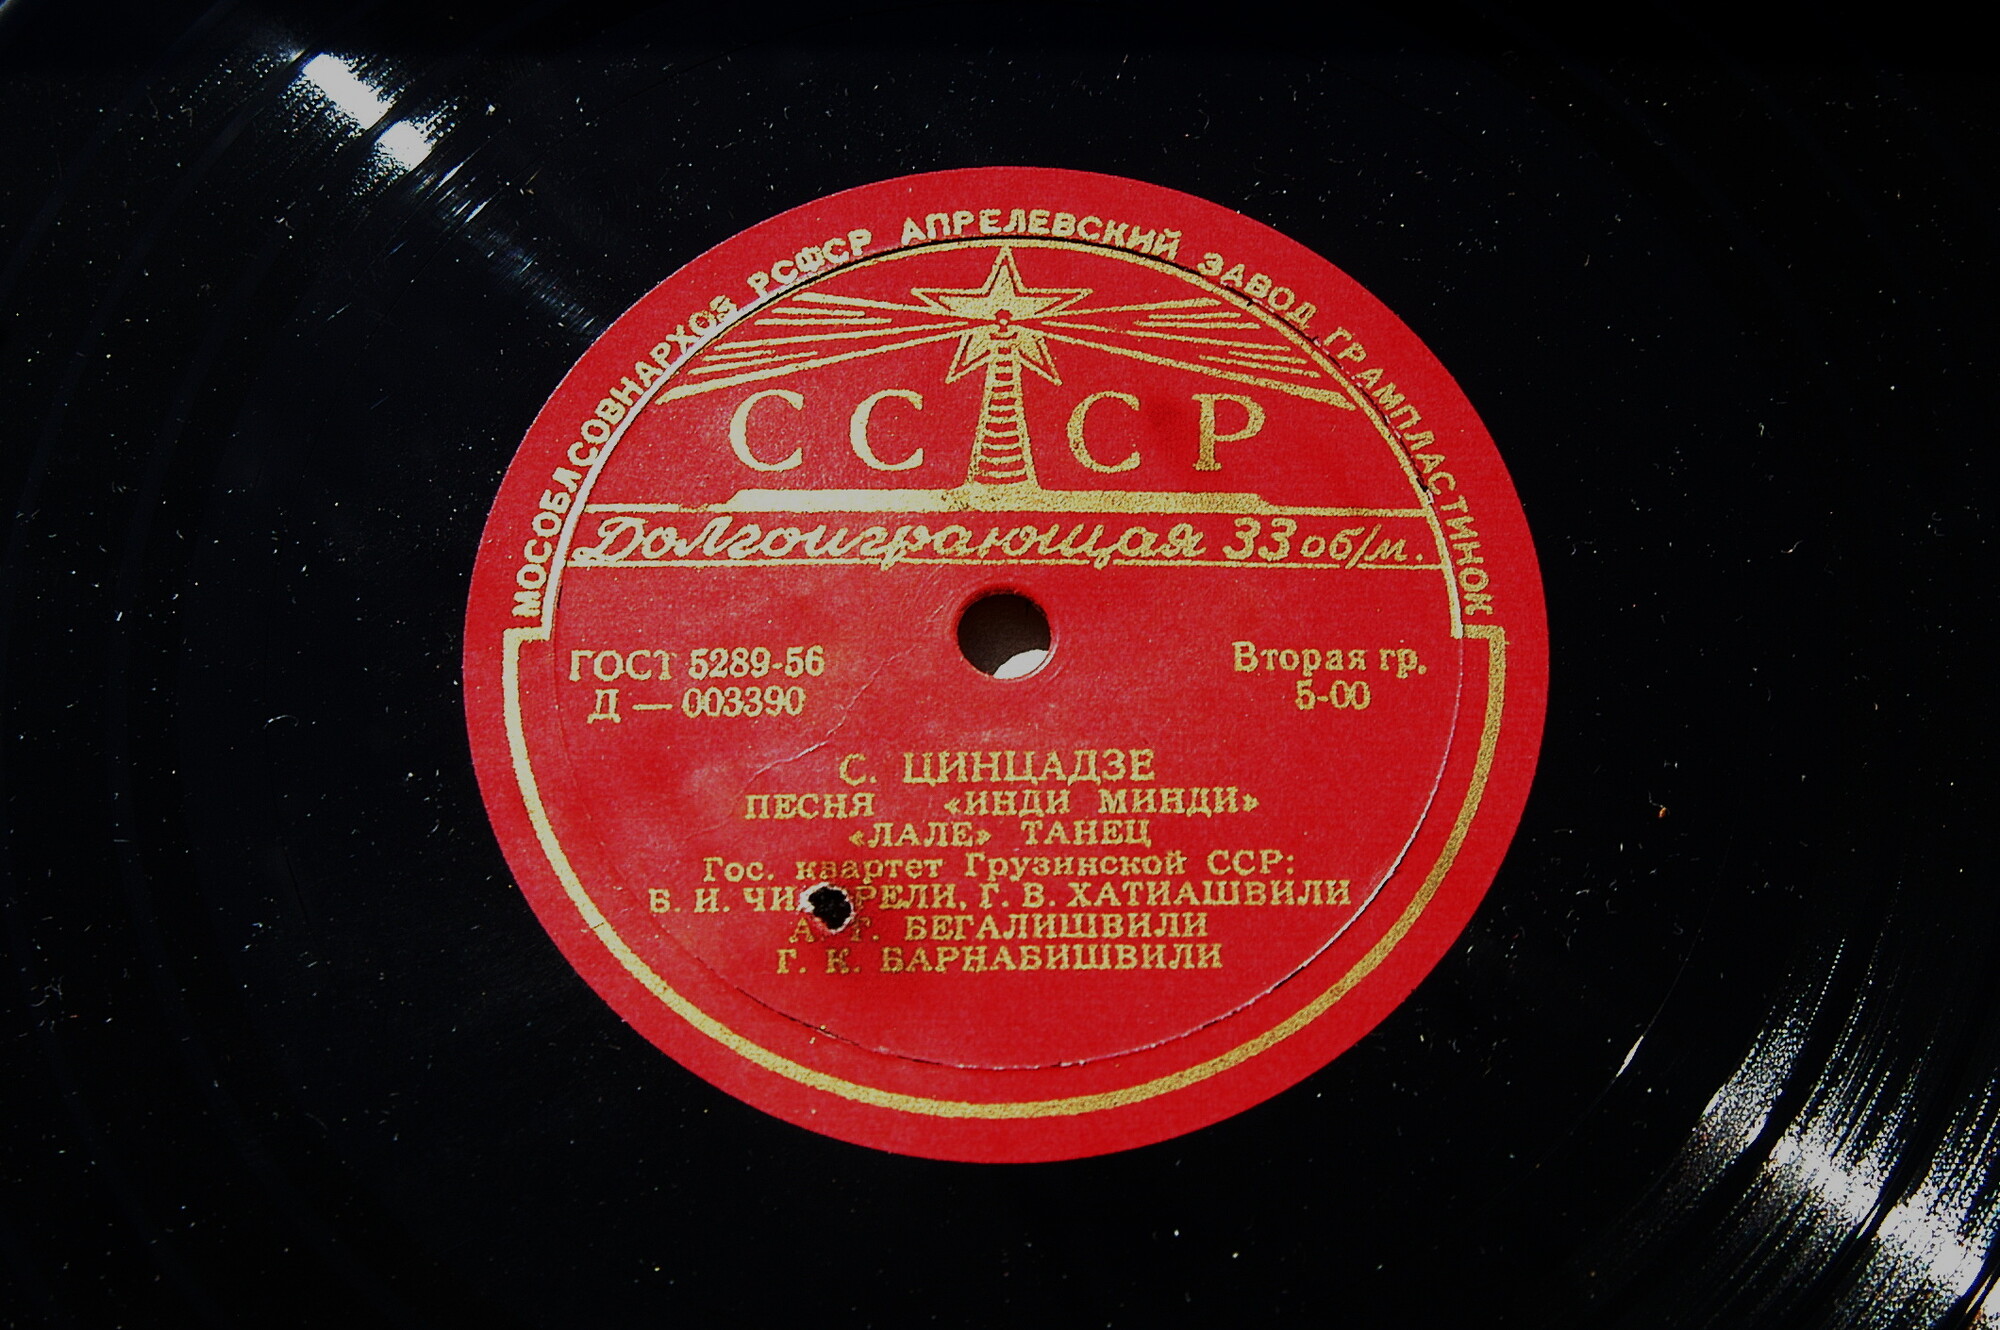 С. ЦИНЦАДЗЕ (1925-1991) Миниатюры для струнного оркестра (Гос. квартет Грузинской ССР)